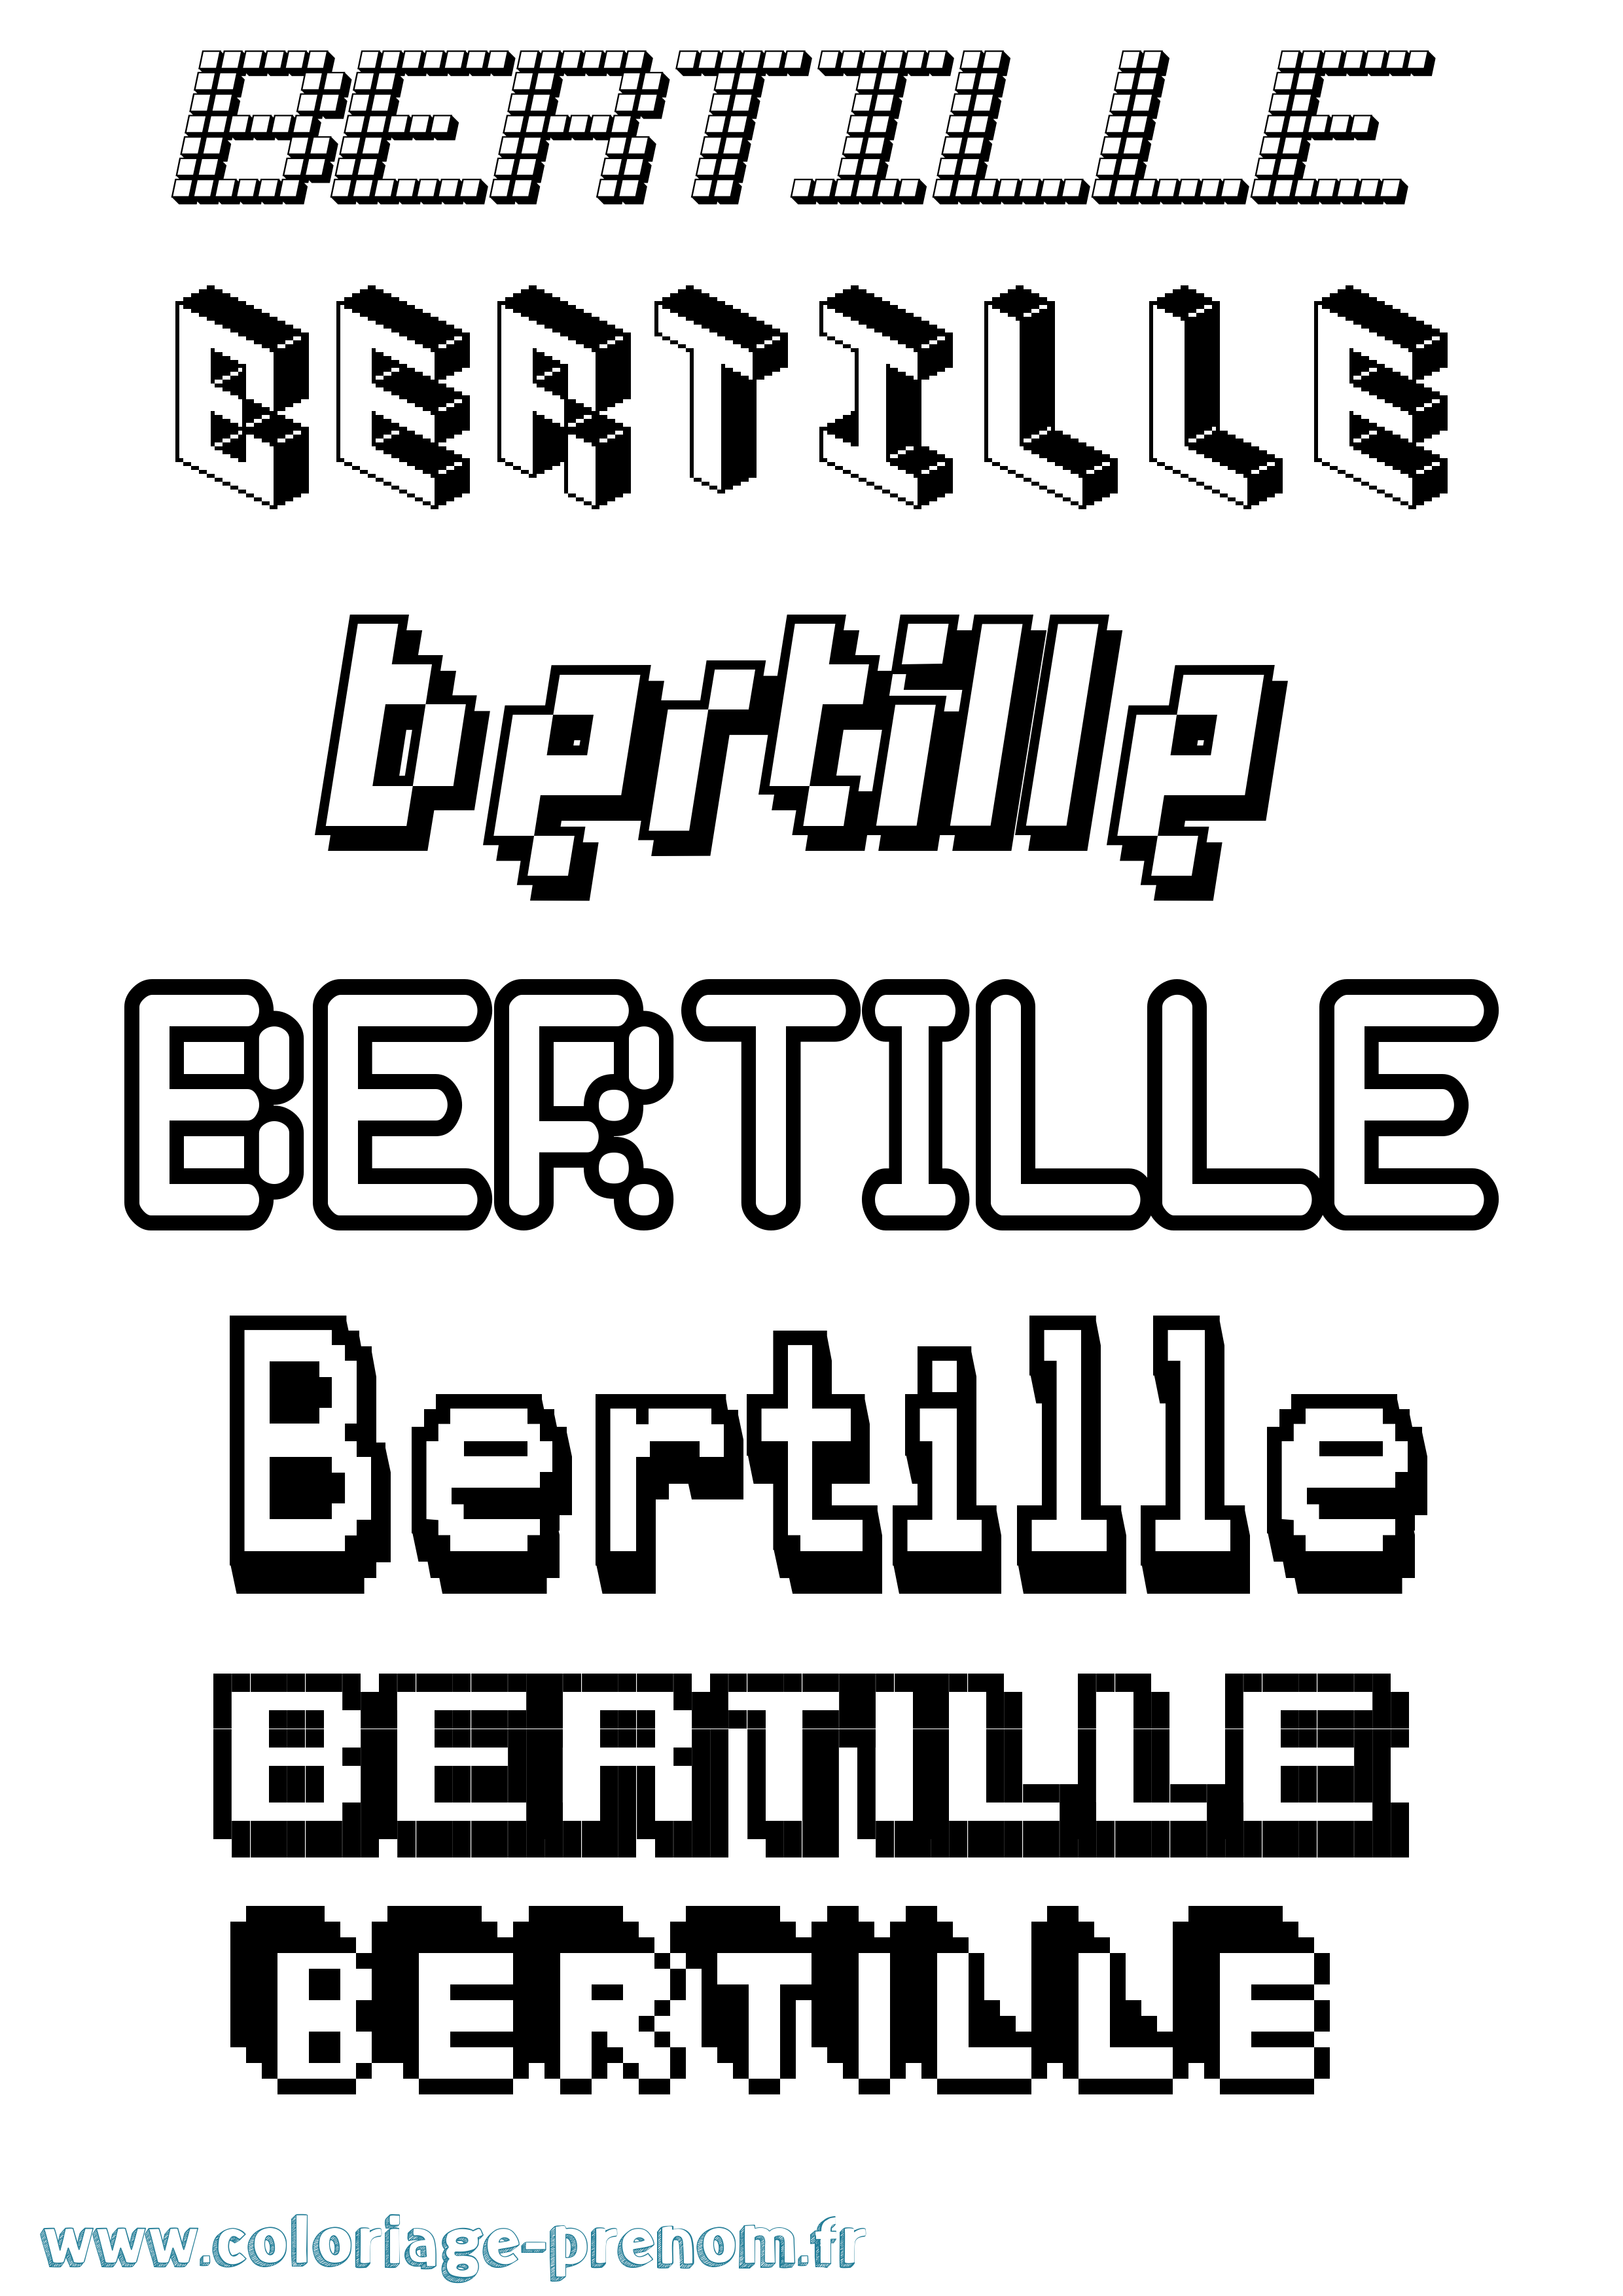 Coloriage prénom Bertille Pixel